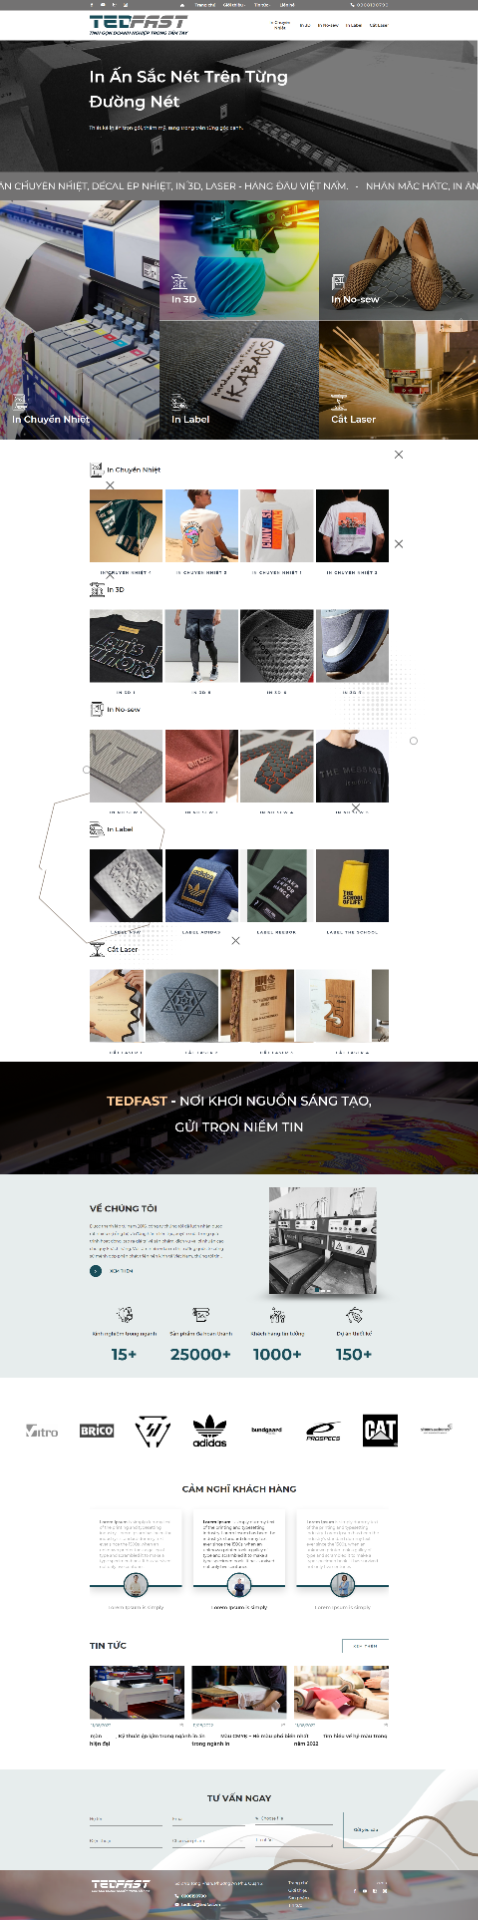 Website cho công ty in ấn chuyển nhiệt, nhãn mác thời trang MPRT-02